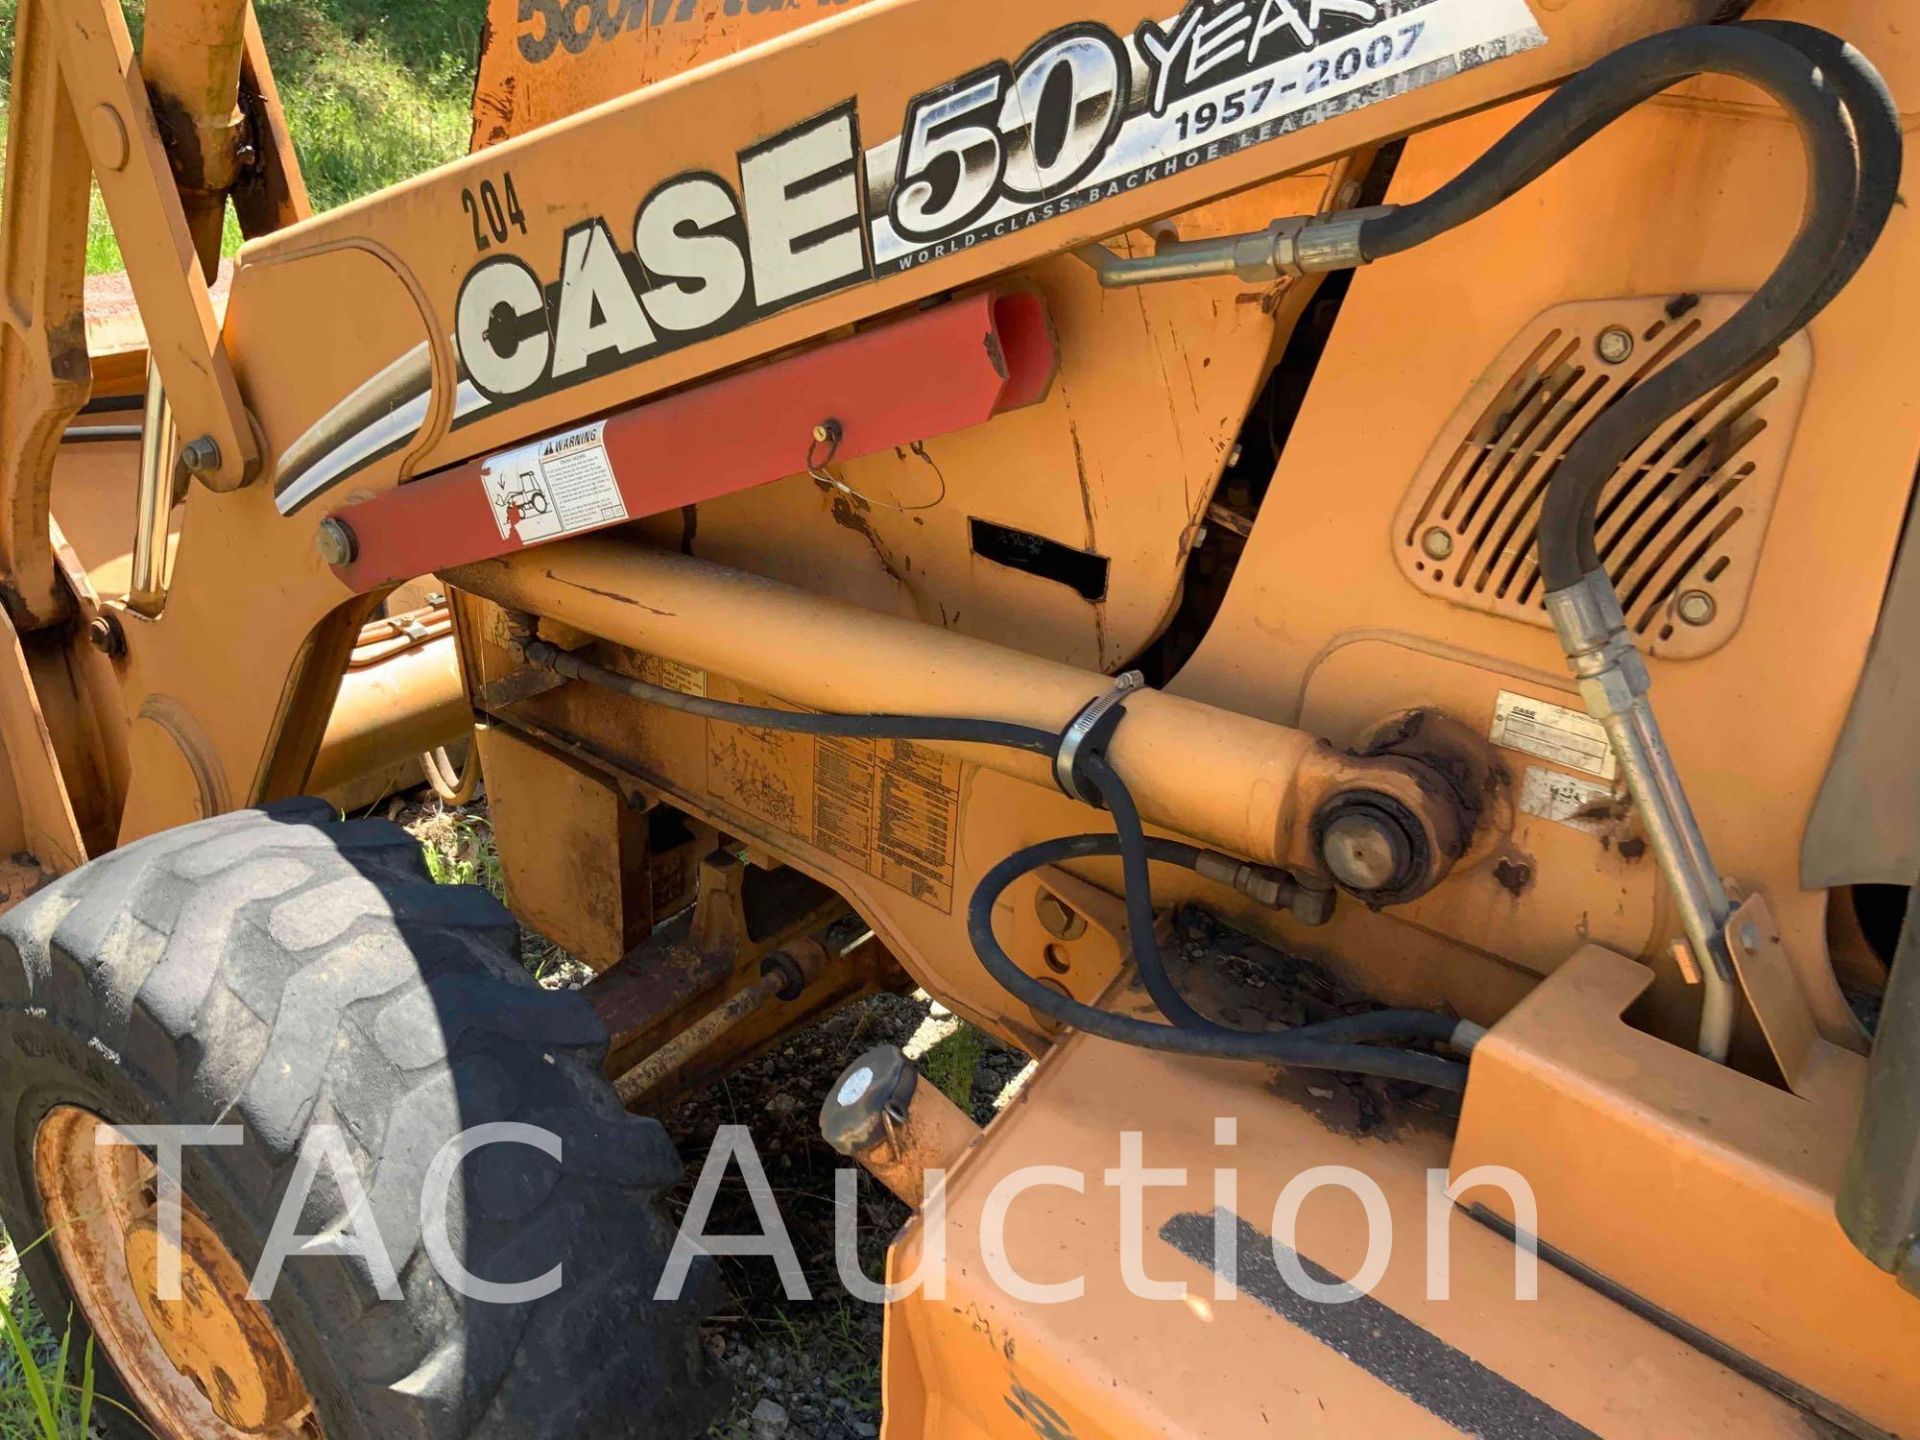 2006 Case 580M 4X4 Backhoe Loader - Image 27 of 45